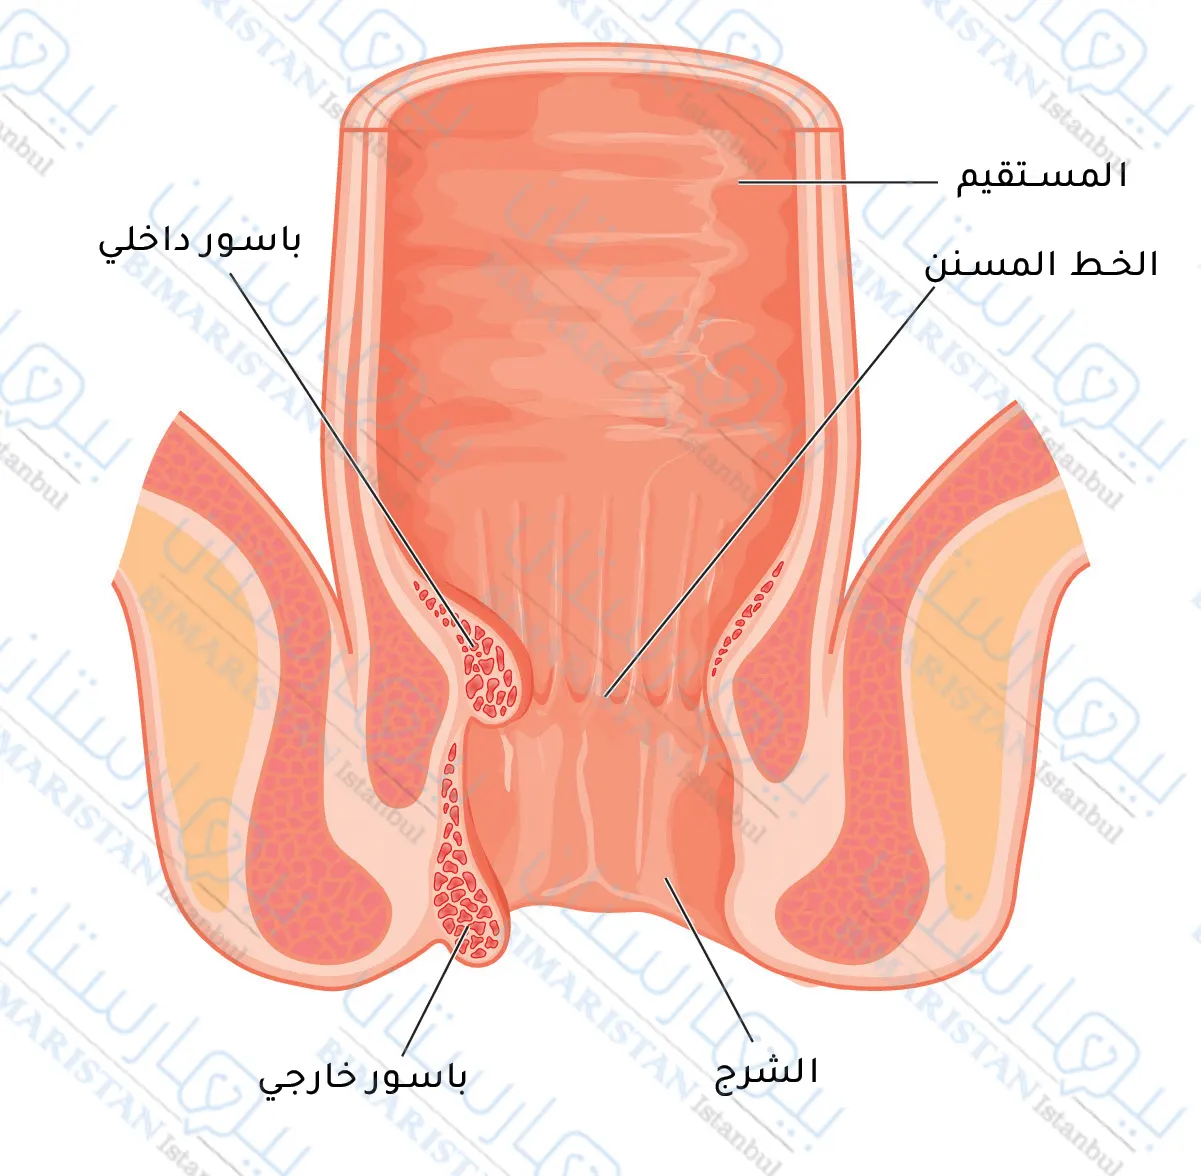 Internal hemorrhoids originate in the rectum or anal canal while external hemorrhoids can be seen around the anus